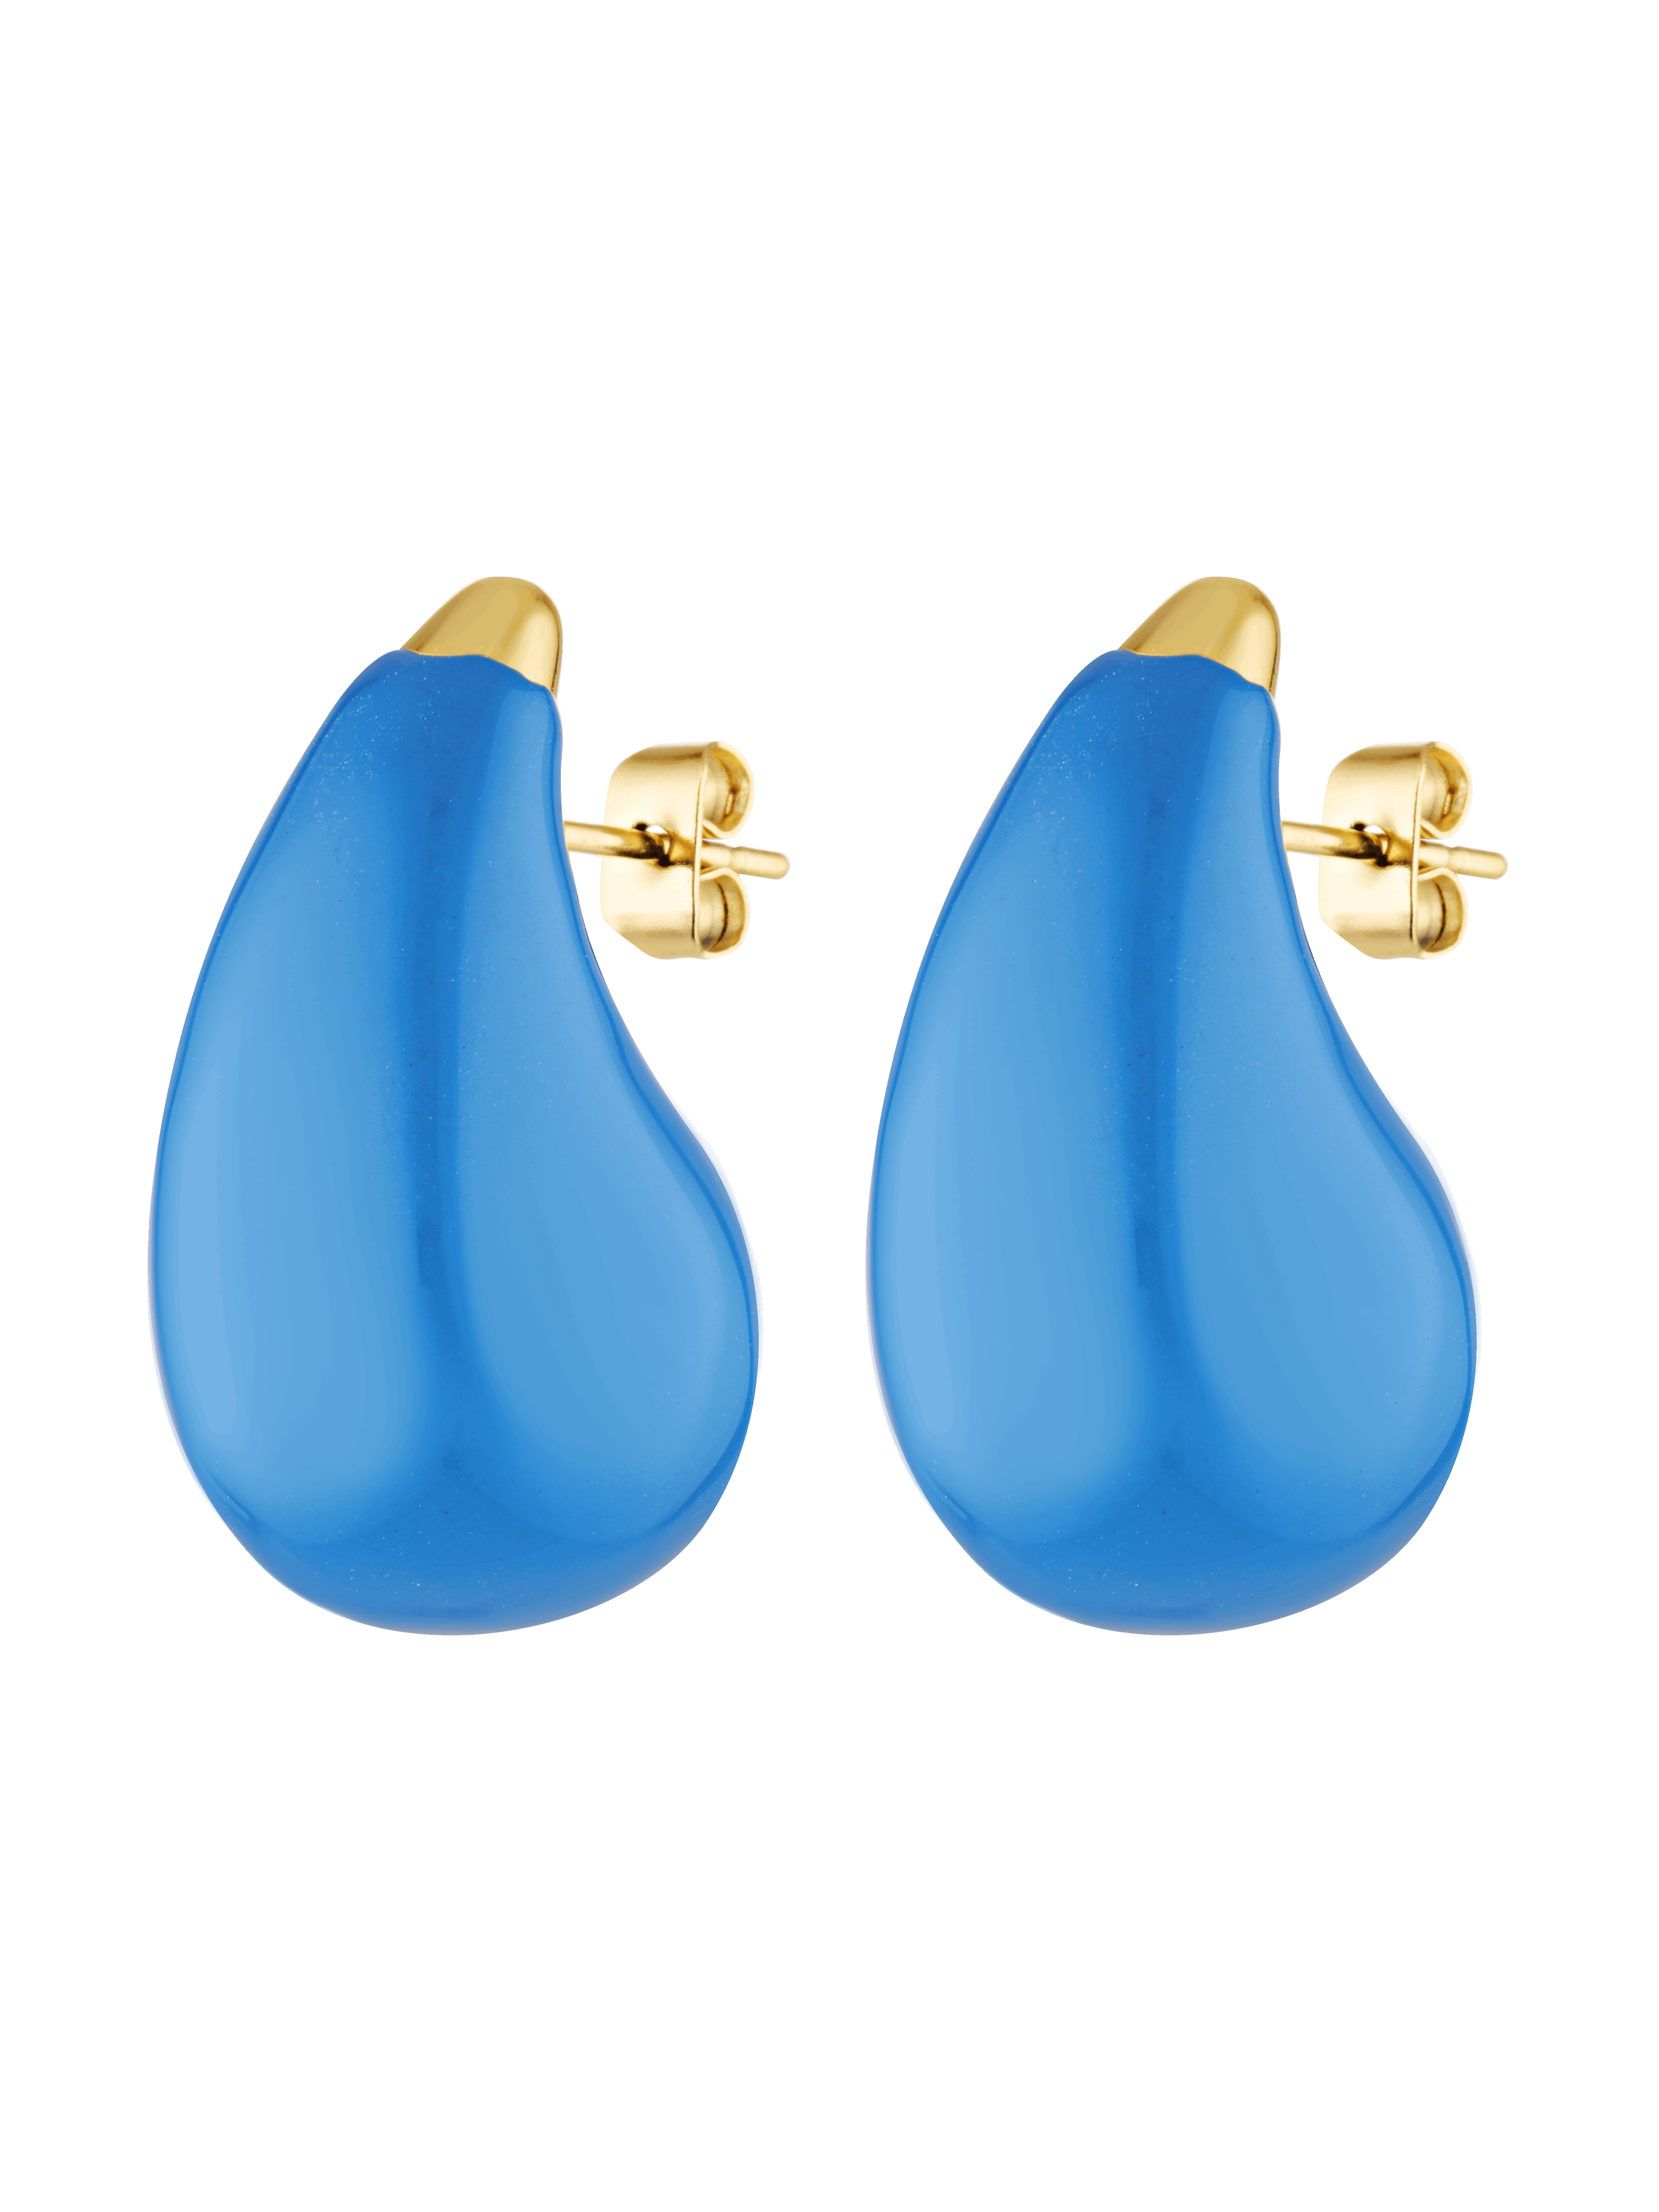 Bright blue enamel teardrop shaped earrings 